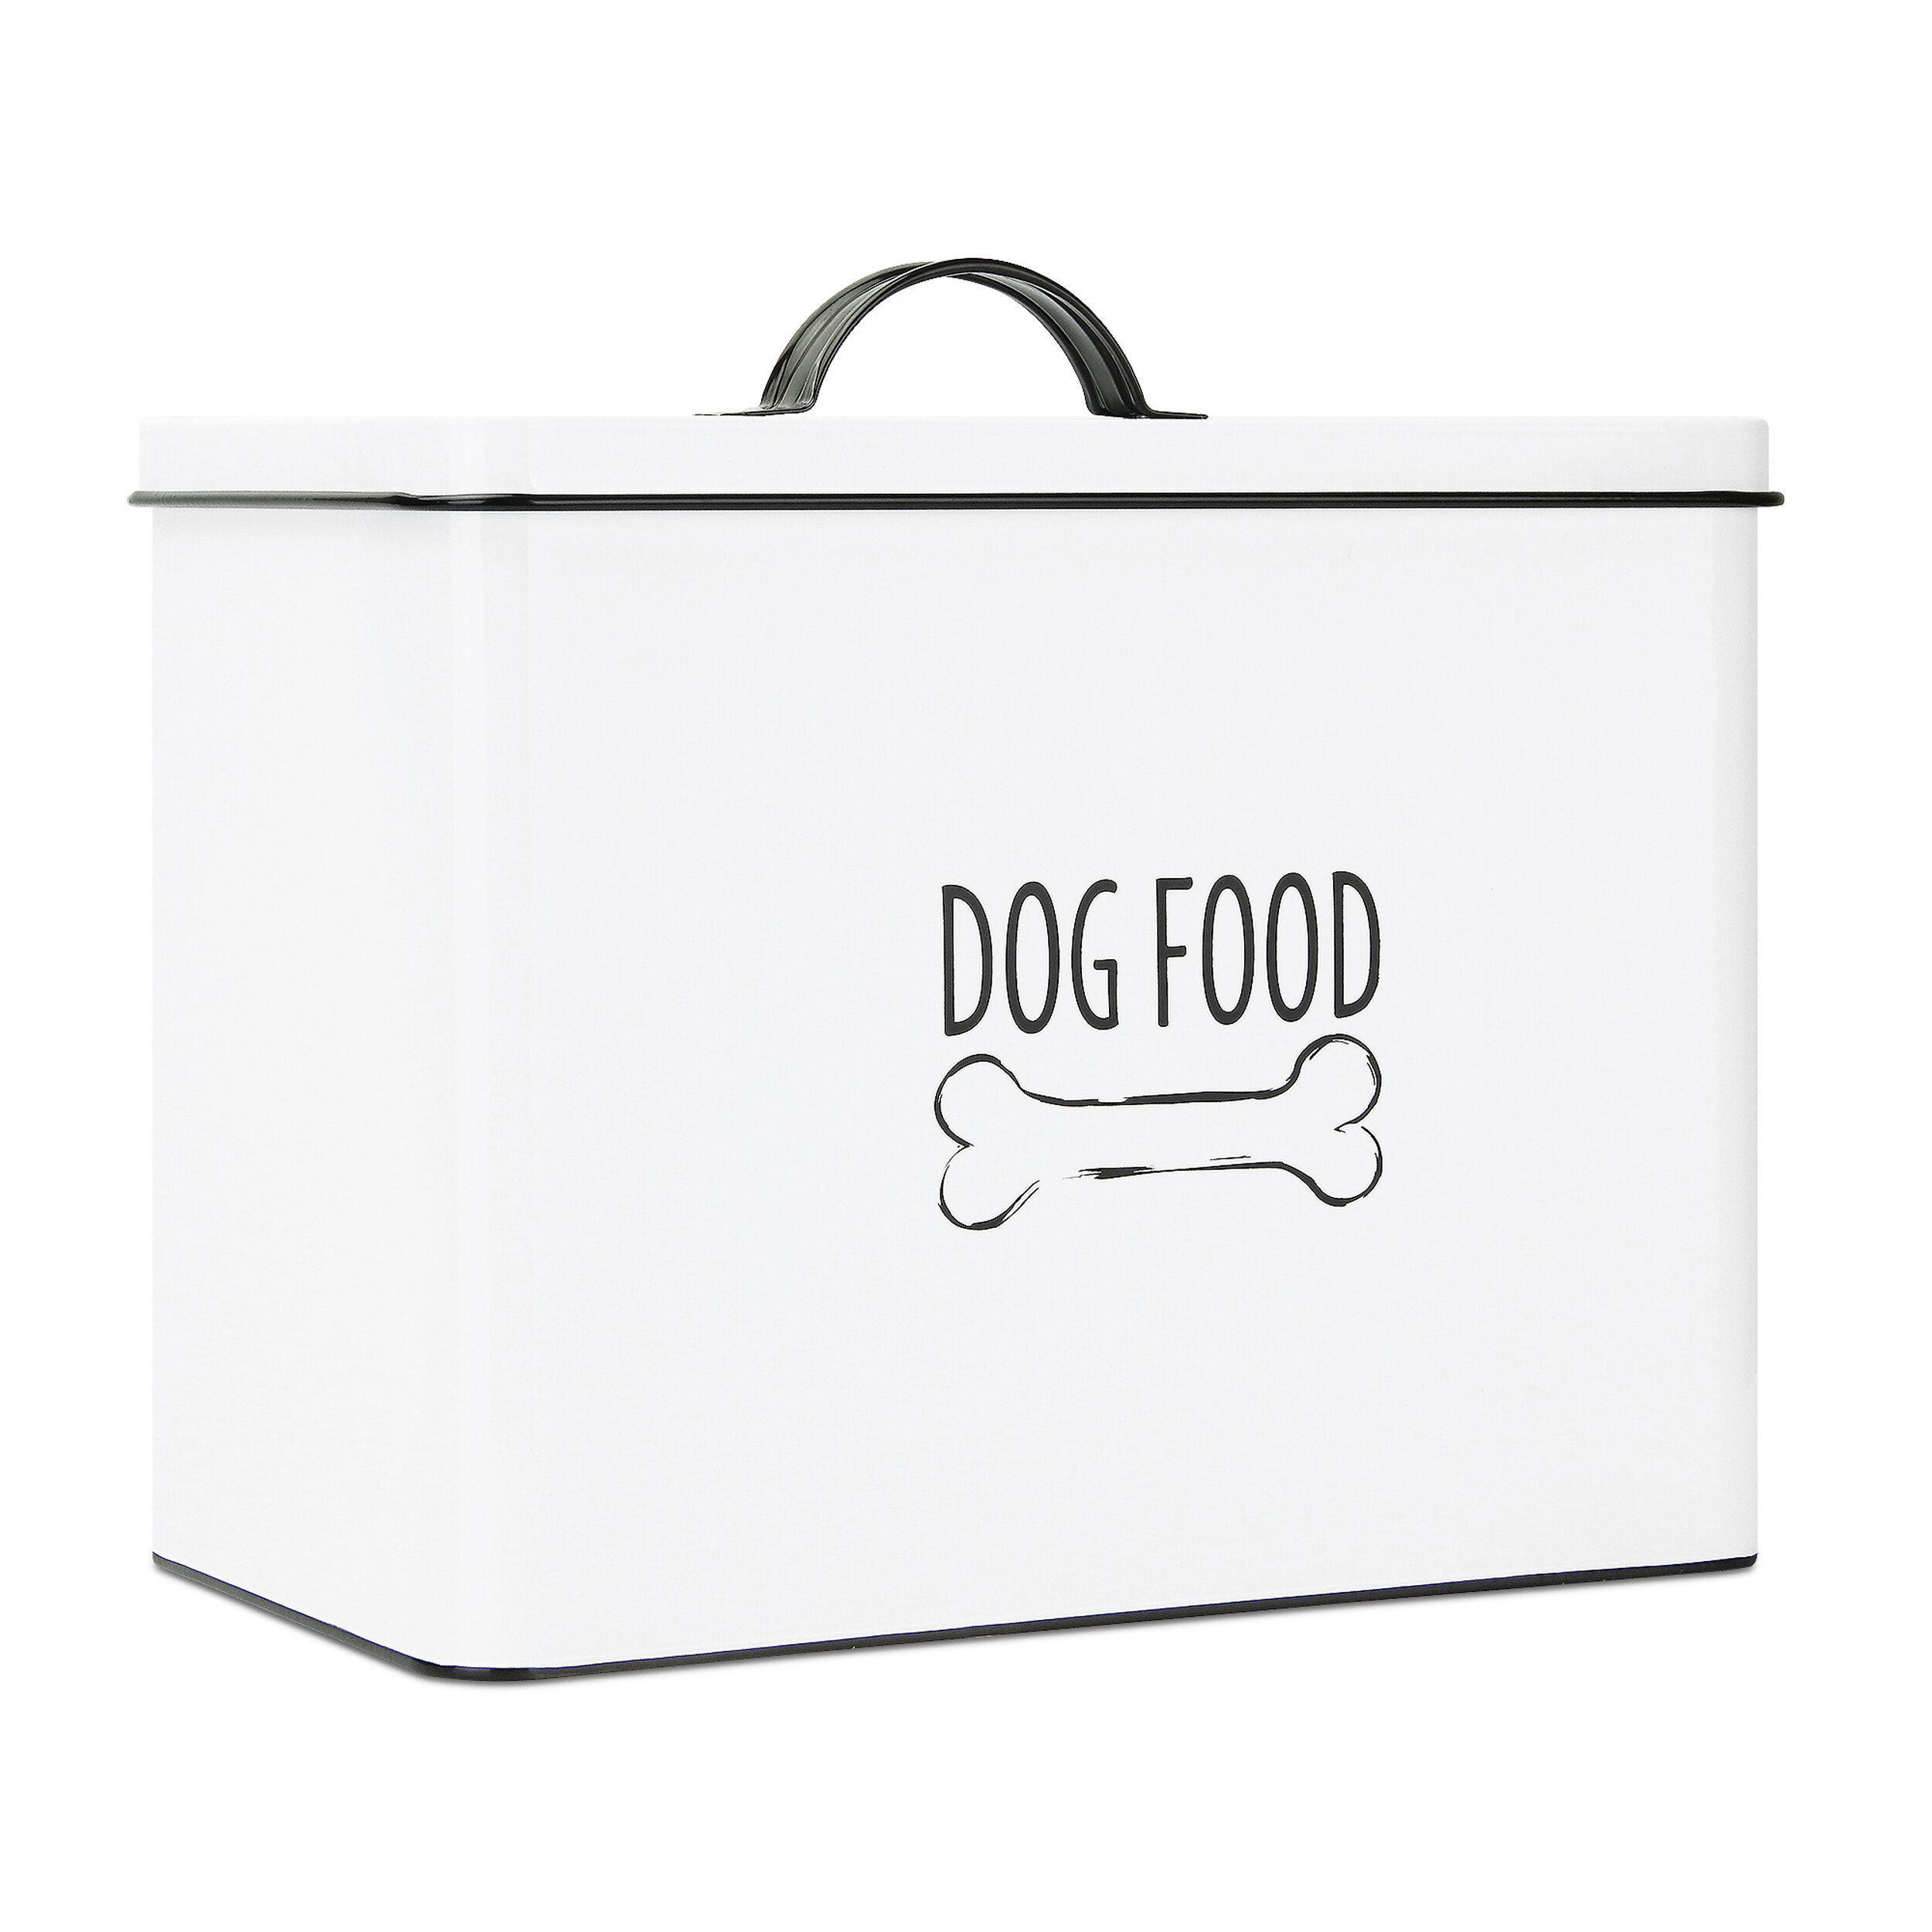 Harry Barker Dog Food Storage Silver Container- Designer Dog Boutique